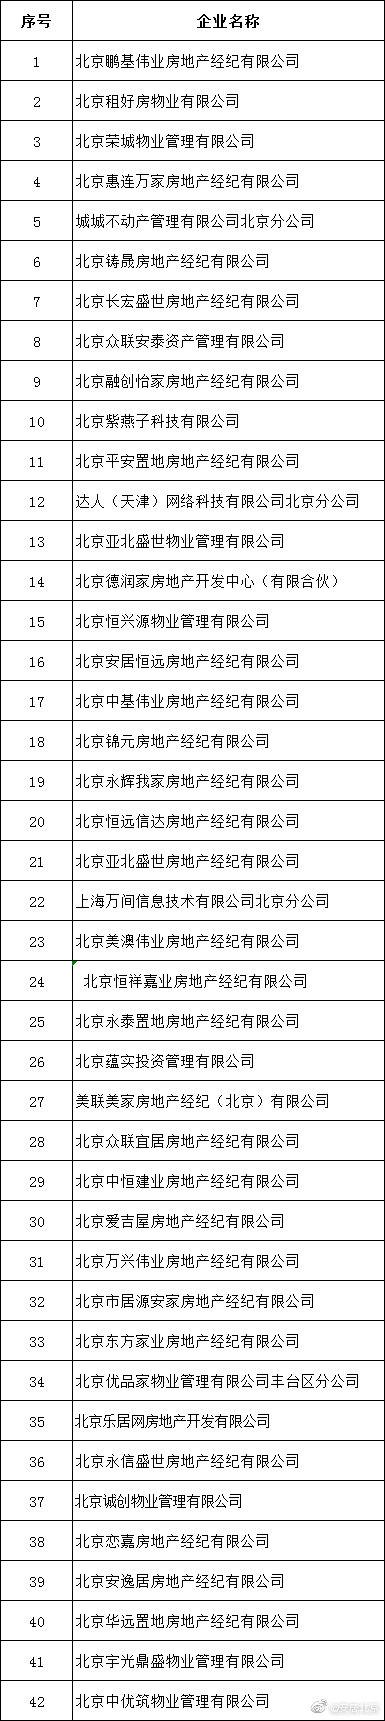 北京公布第二批违法违规行为较多租赁中介企业